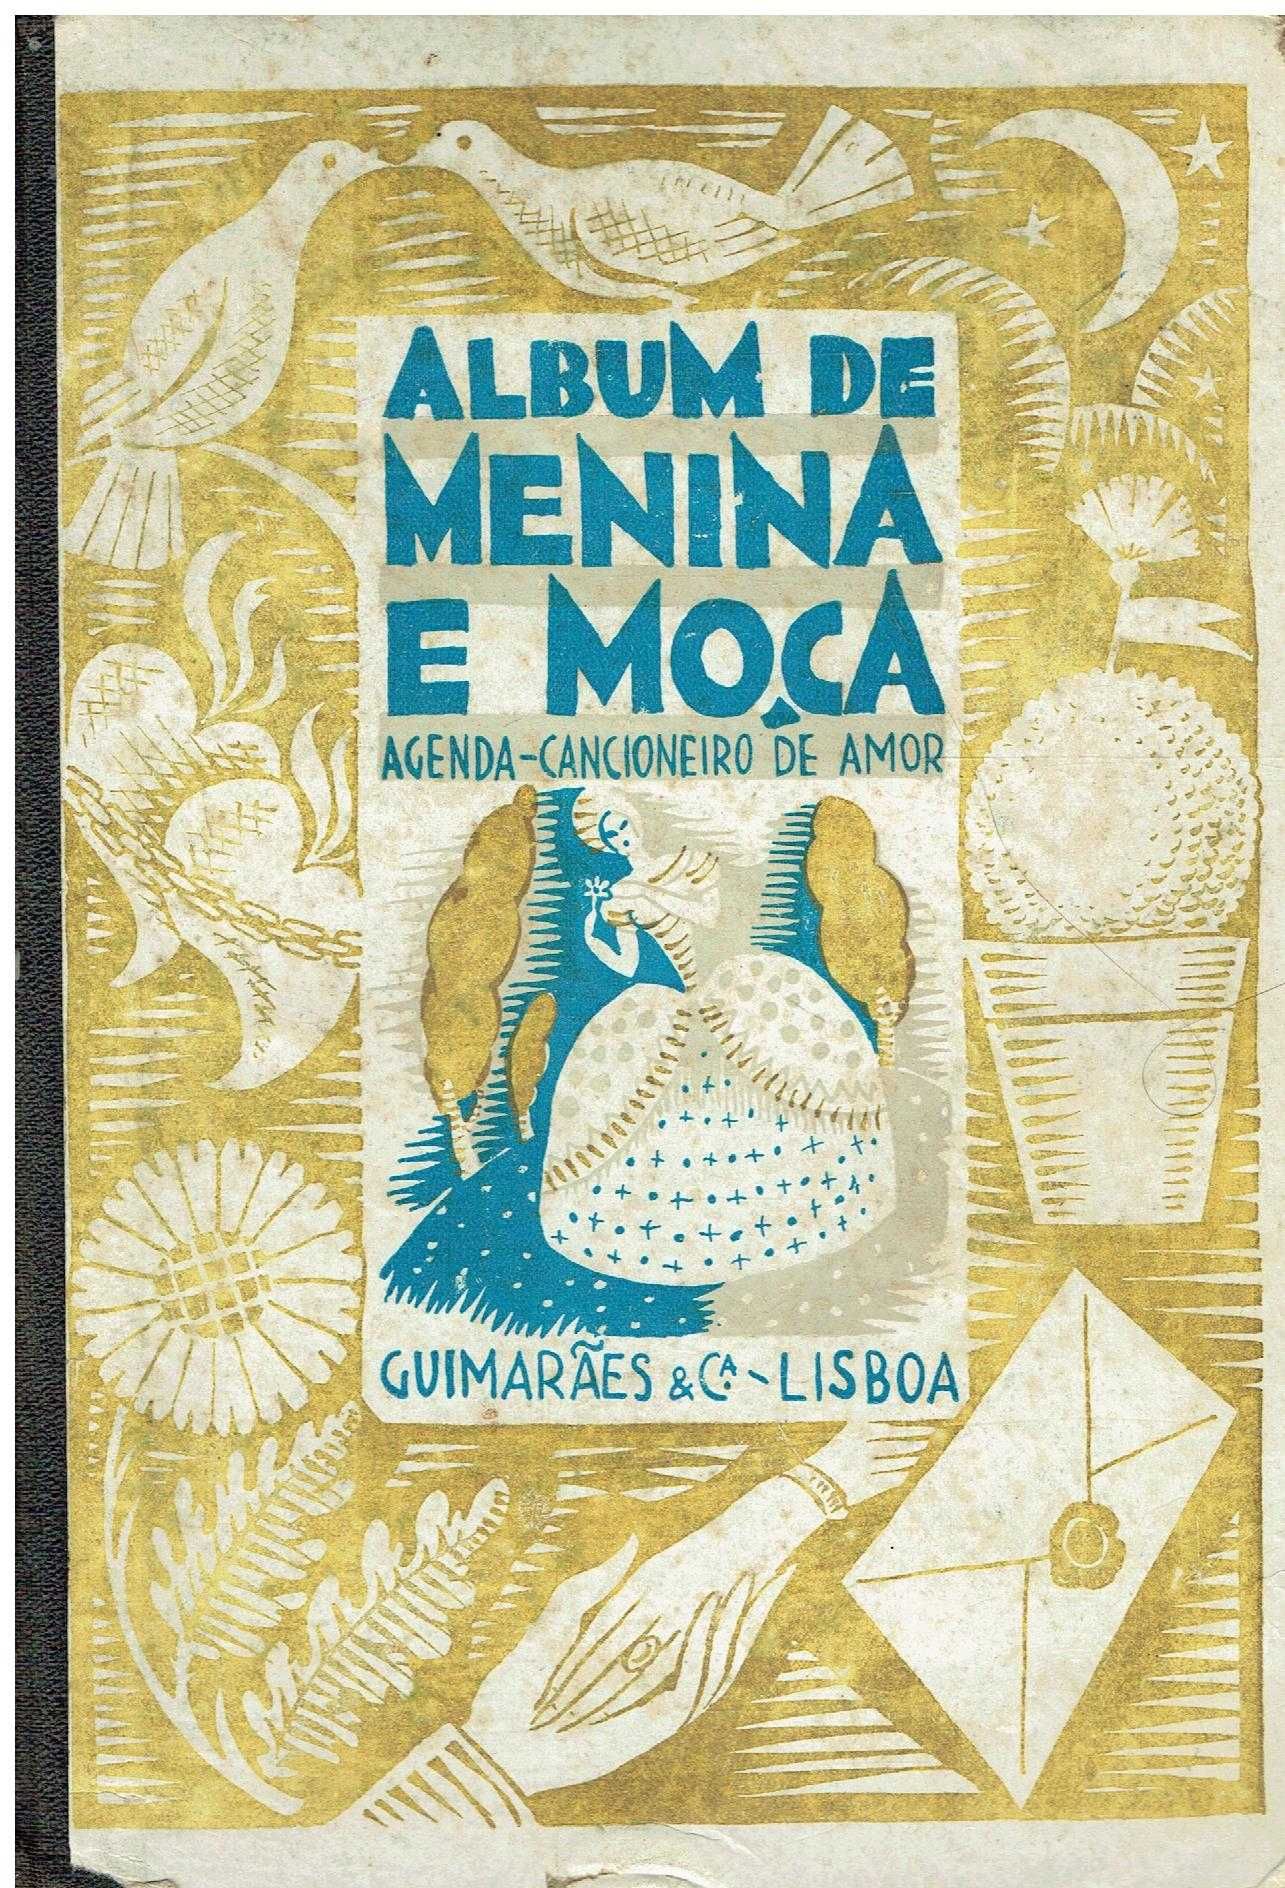 11751

Album de Menina e Moça -agenda Cancioneiro de Amor